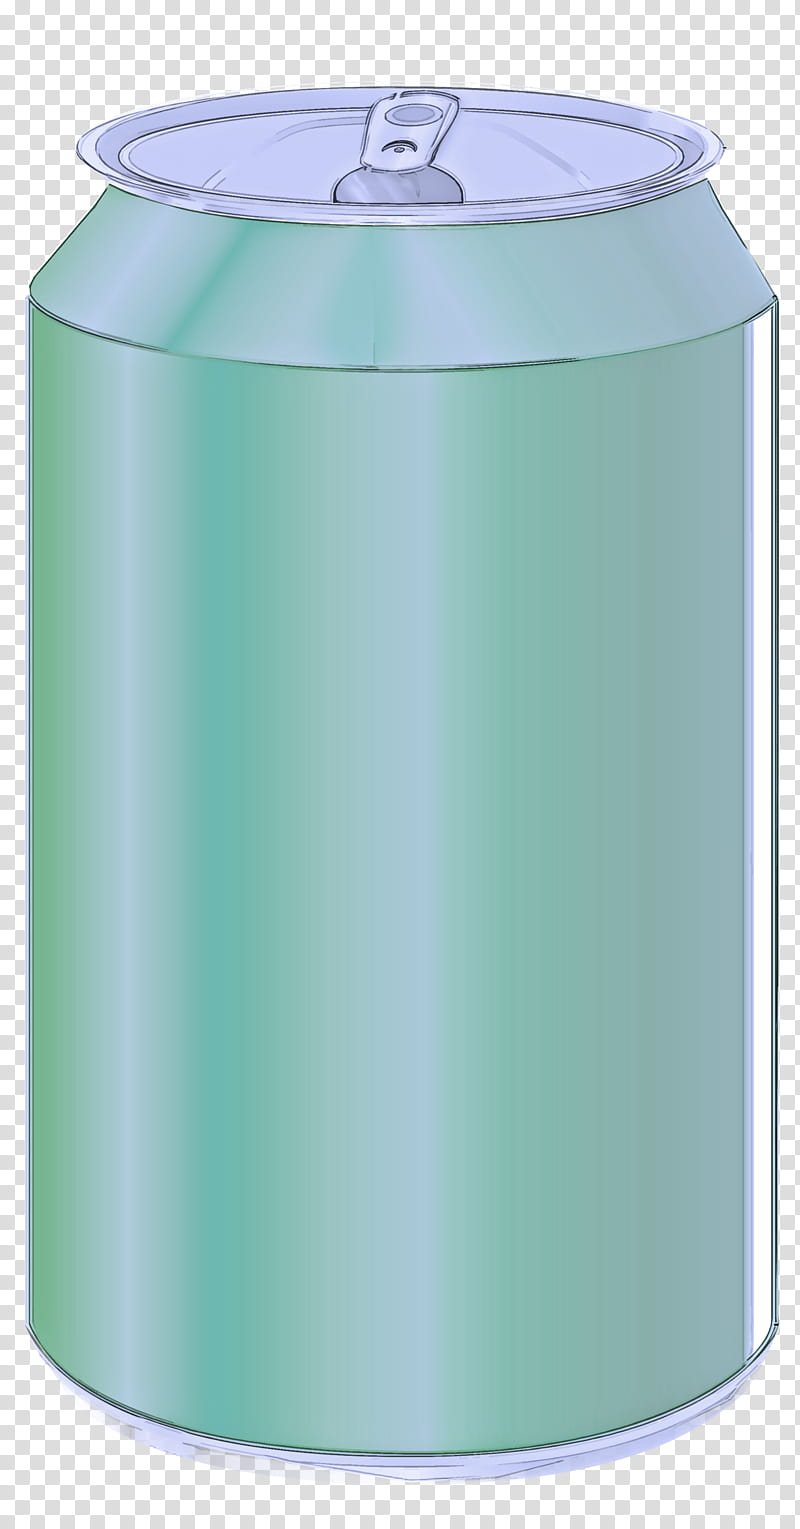 green aqua rain barrel cylinder beverage can transparent background PNG clipart